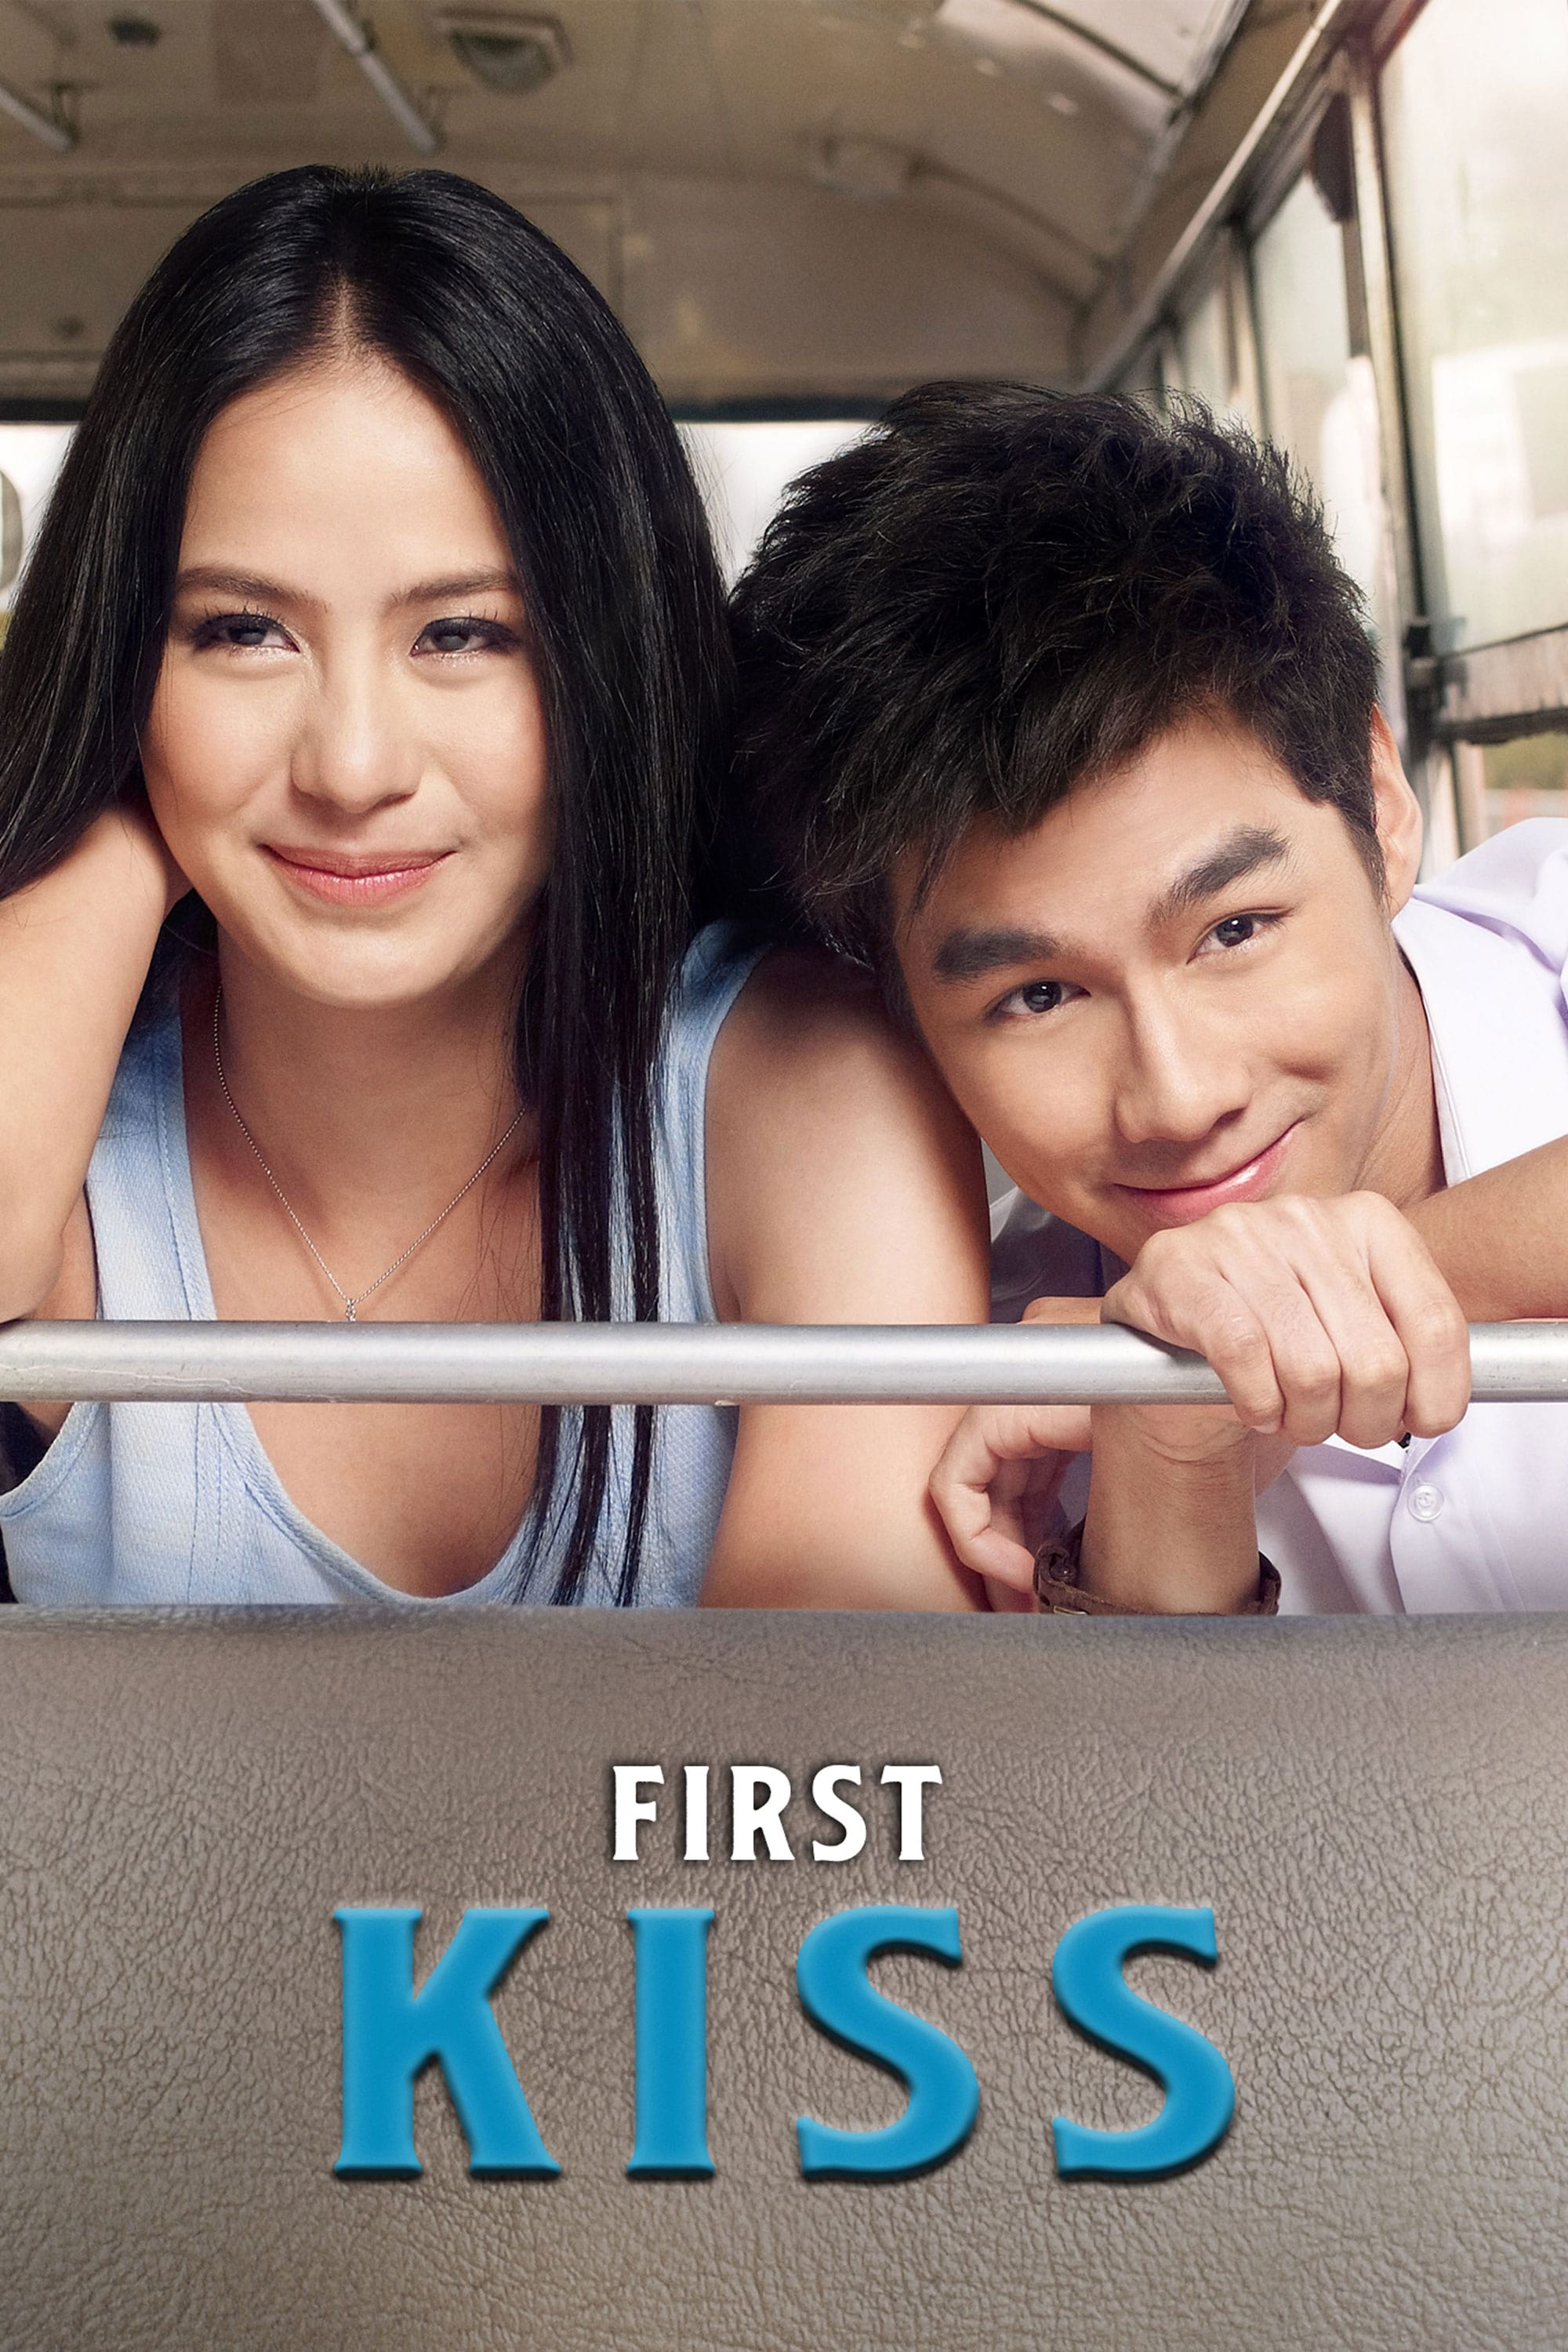 First kiss (2012)